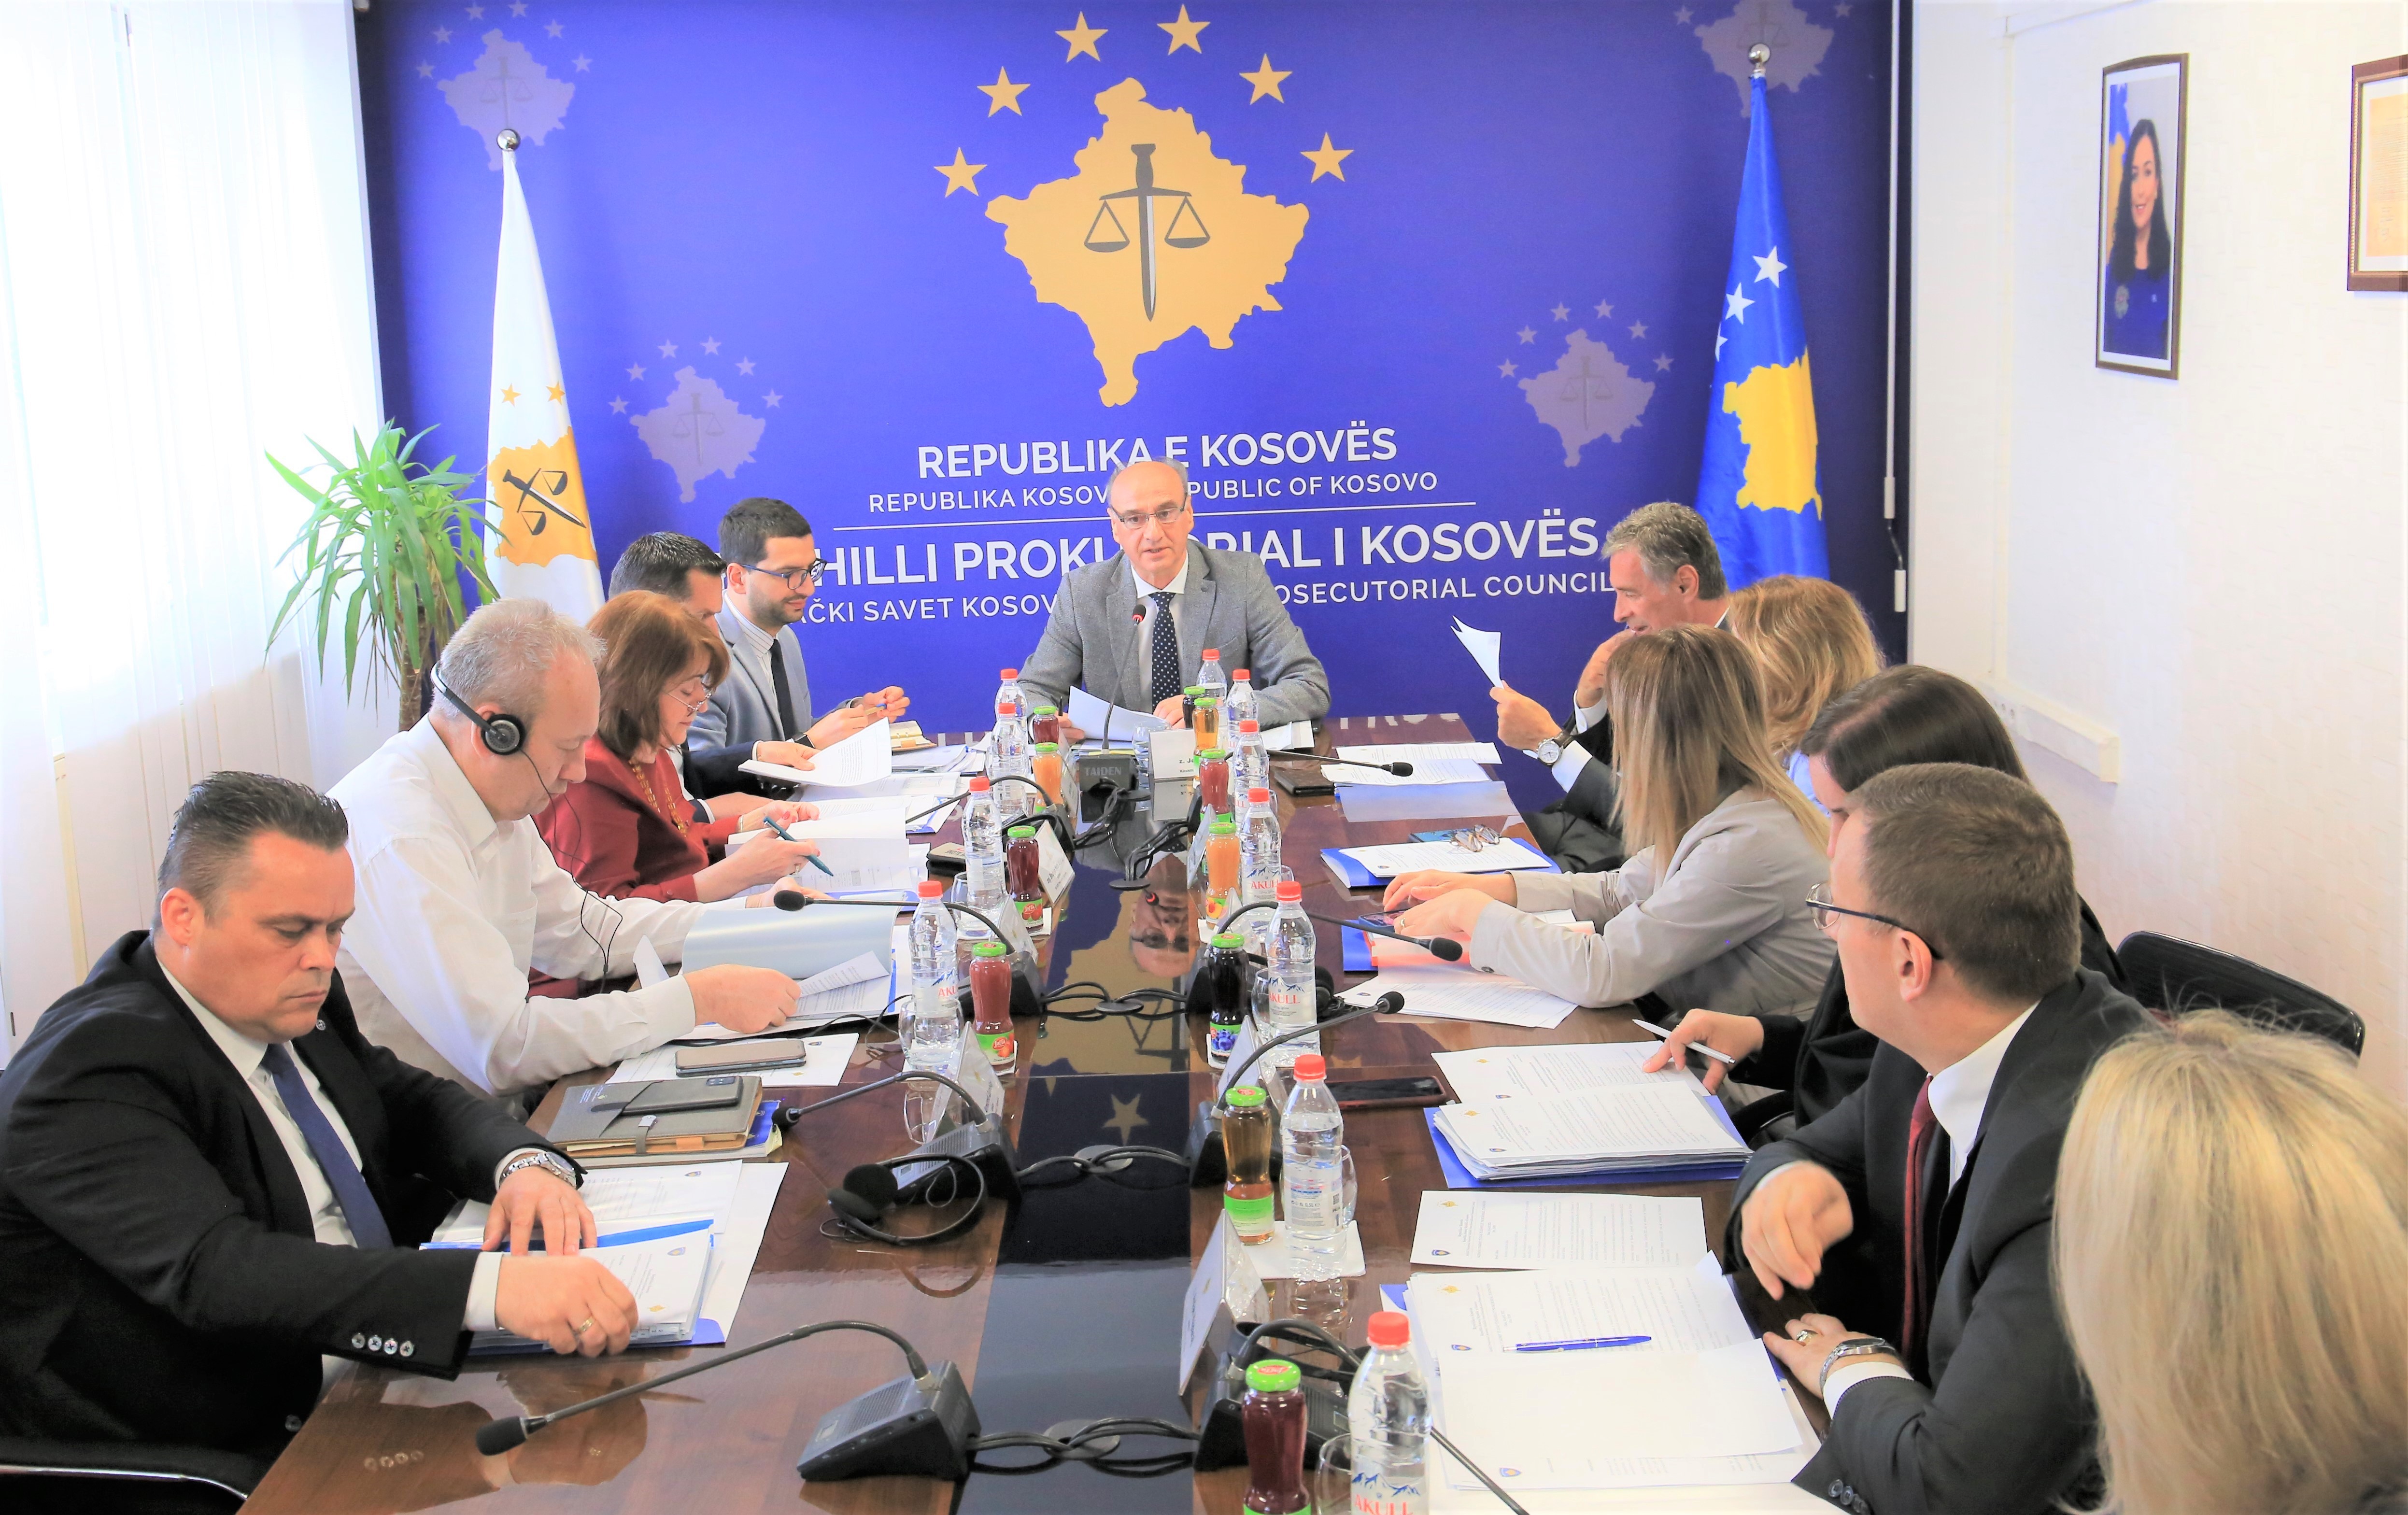 Mbahet takimi i 213-të i Këshillit Prokurorial të Kosovës